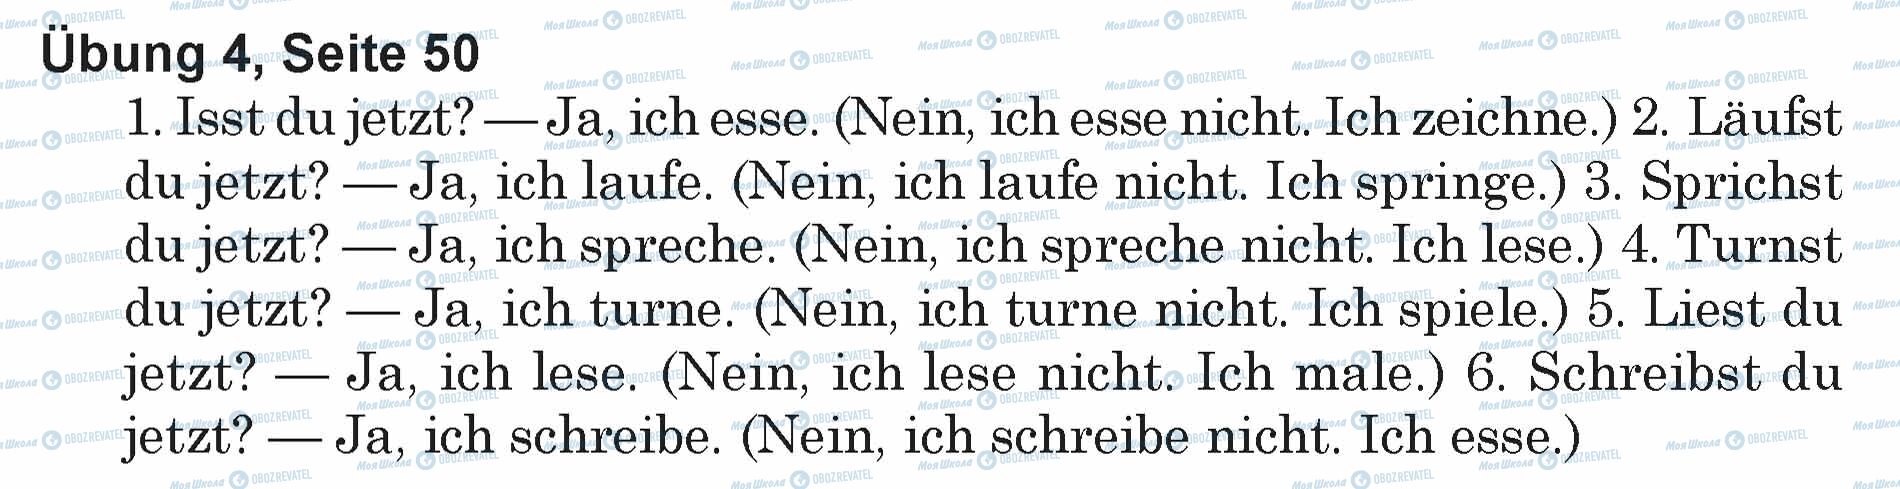 ГДЗ Немецкий язык 5 класс страница Ubung 4, Seite 50